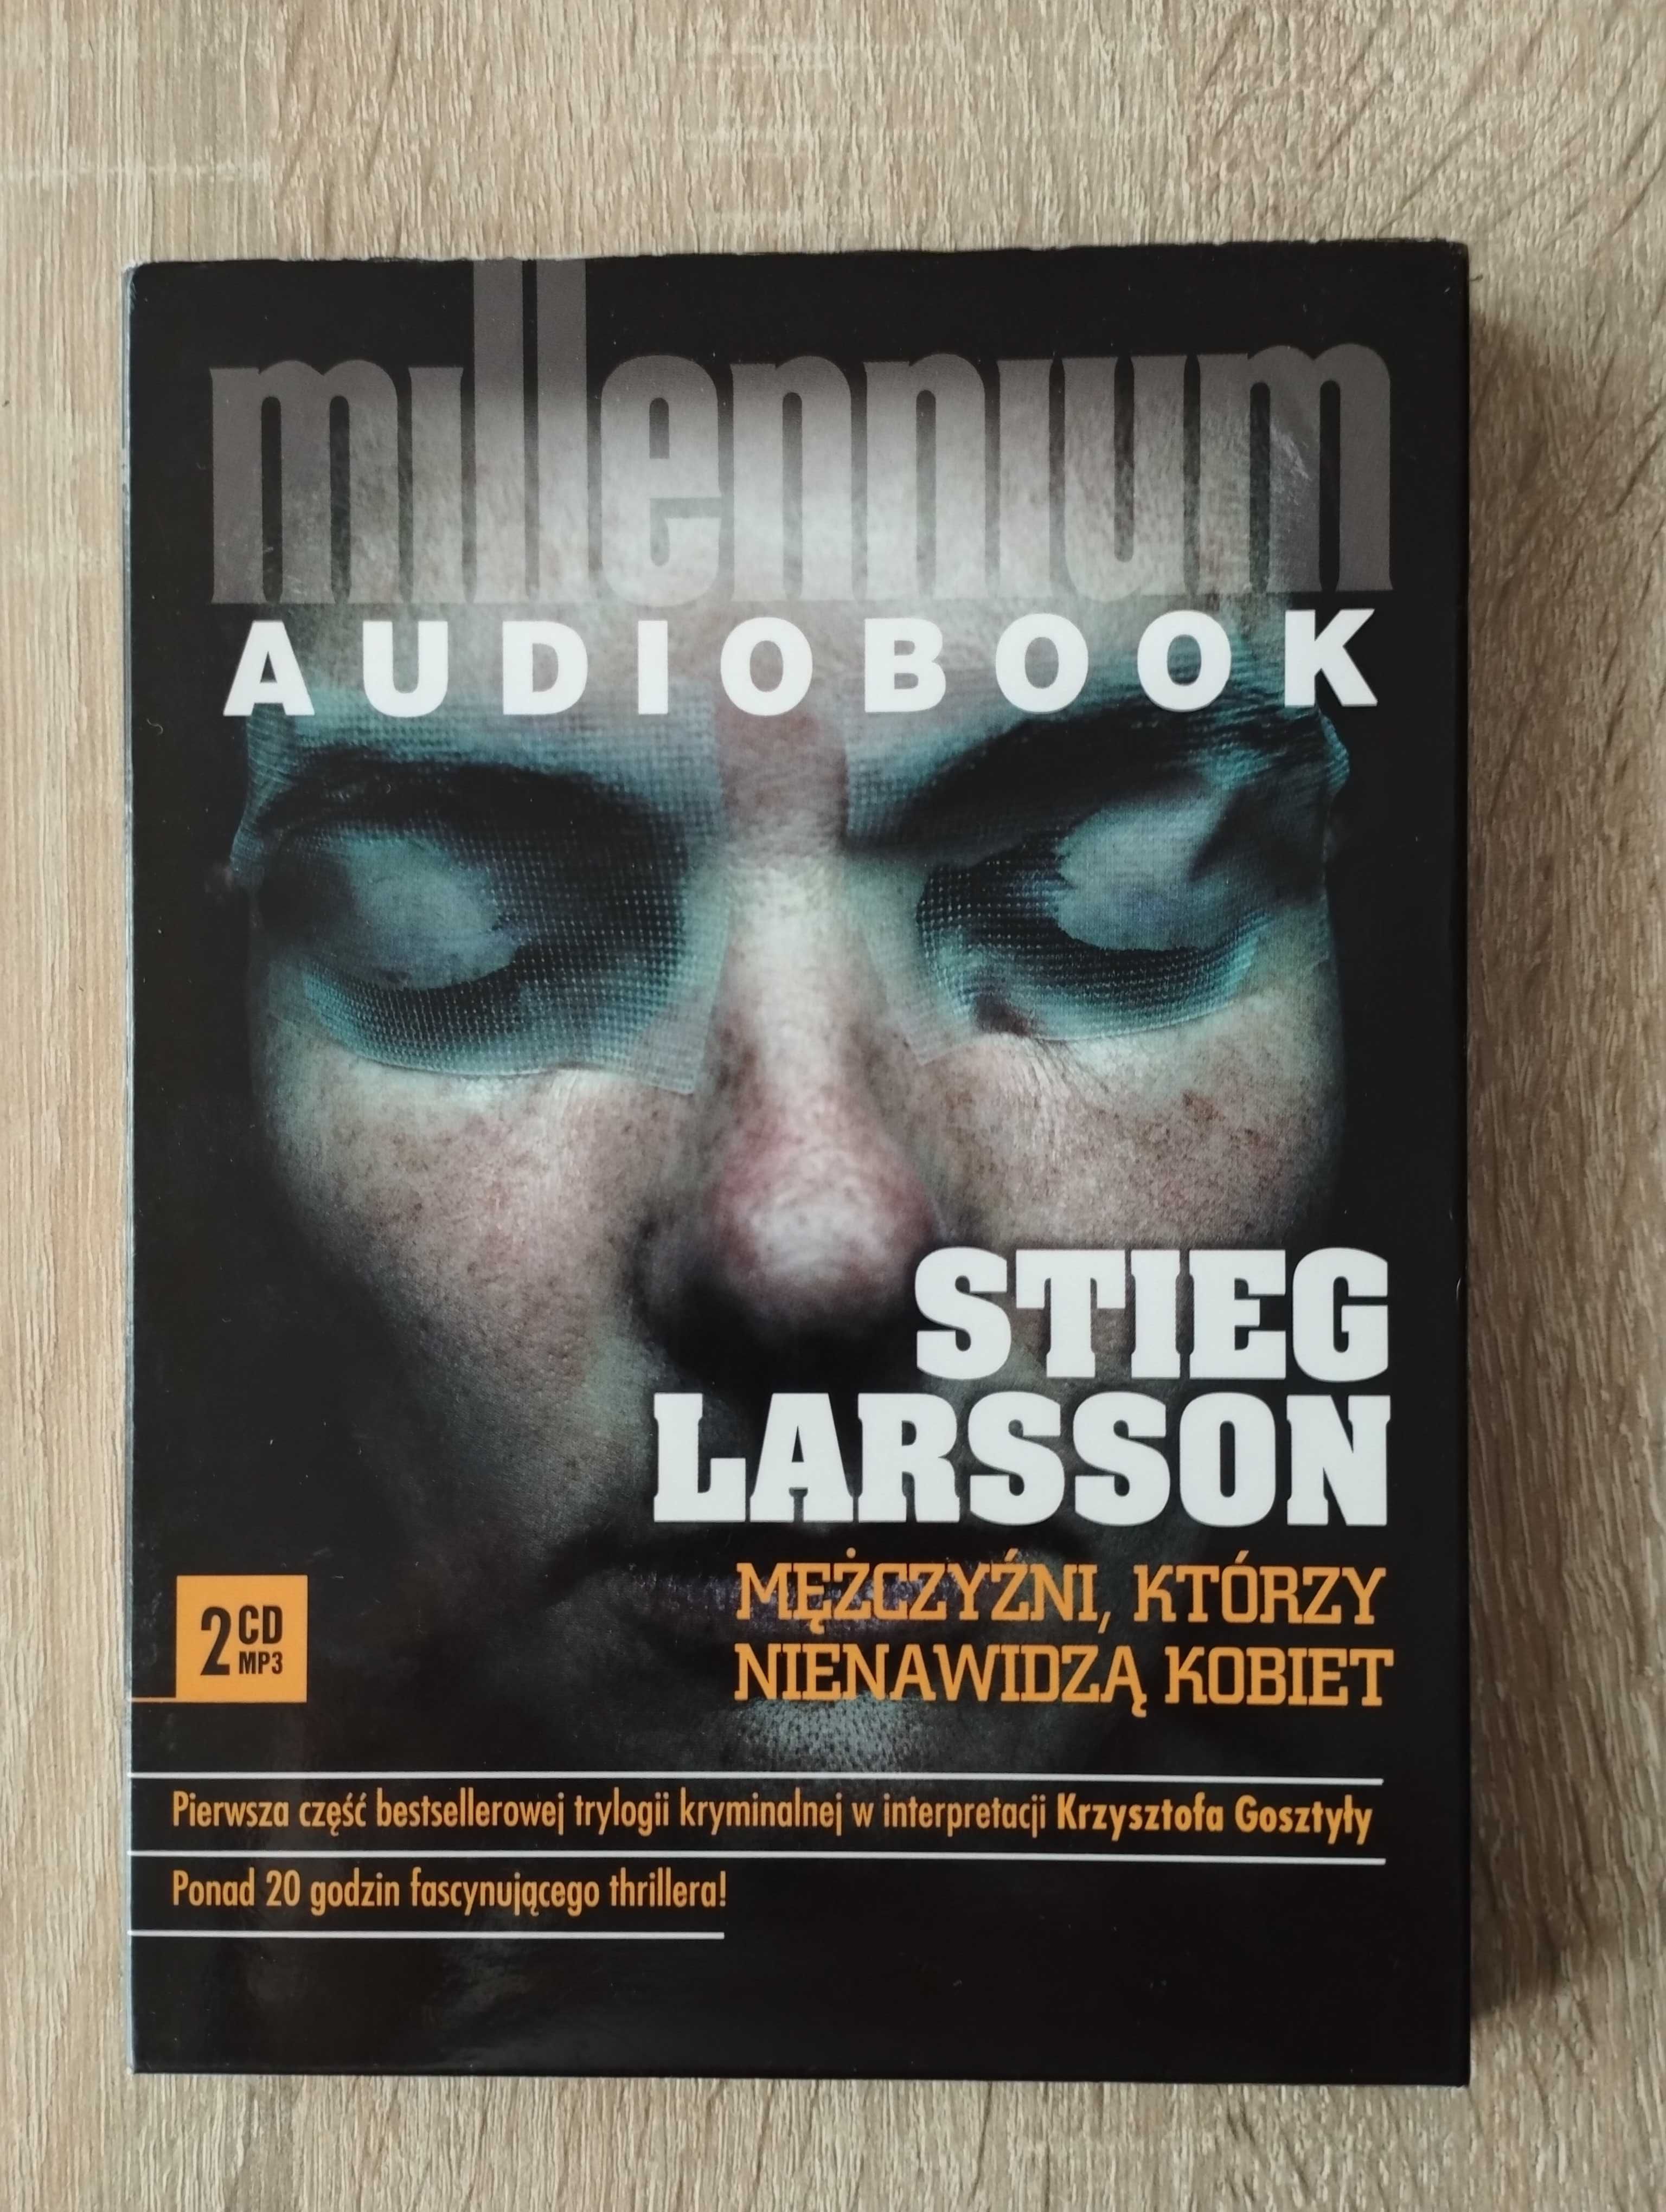 Audiobook pt. "Mężczyźni, którzy nienawidzą kobiet" S. Larssona